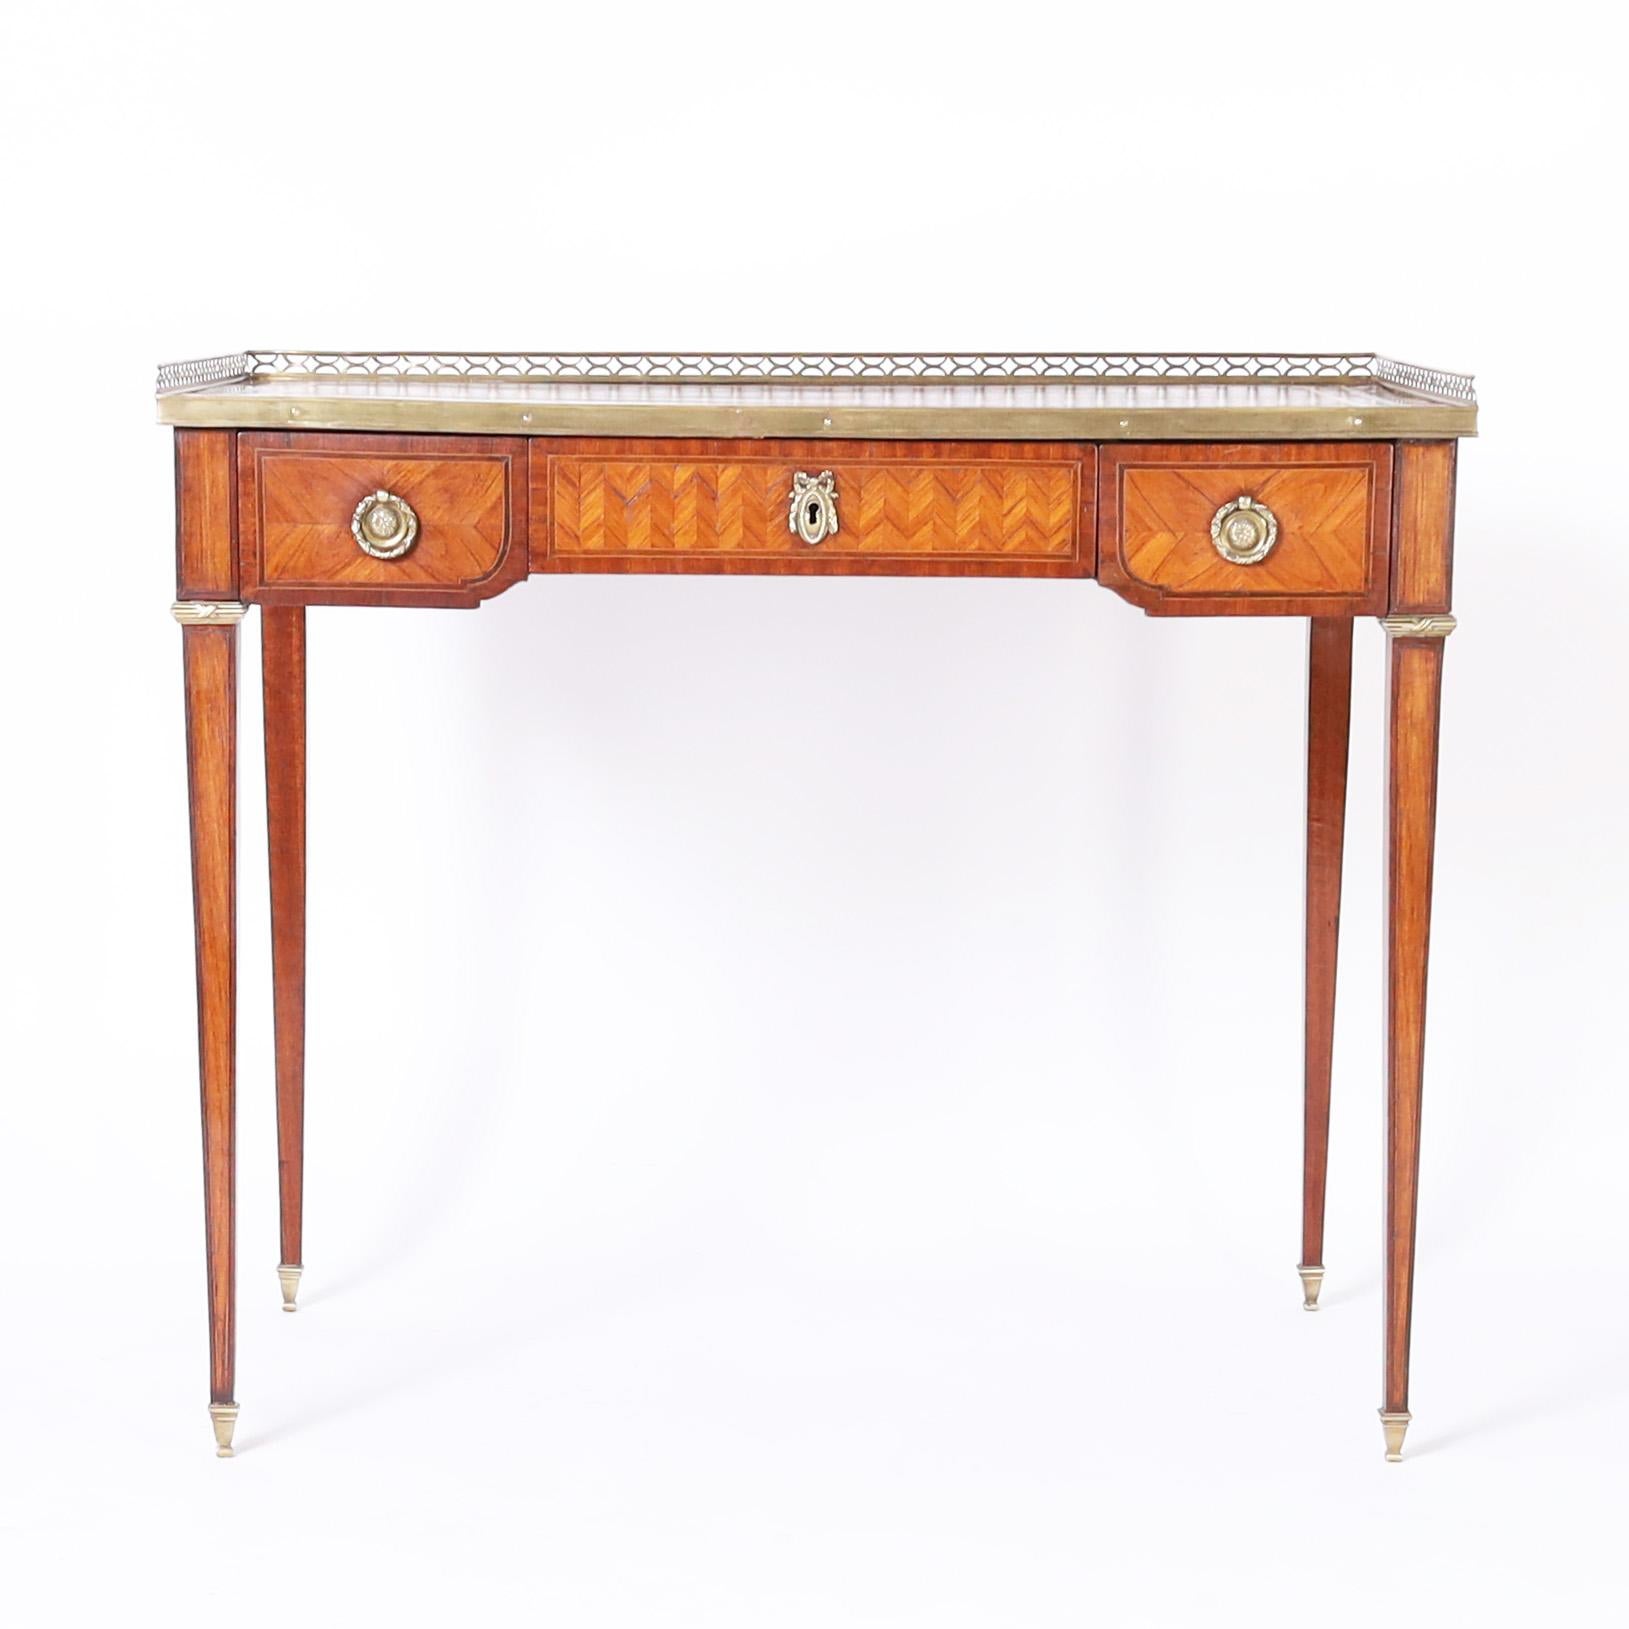 Raffinierte antike Französisch Louis XVI-Stil Schreibtisch in exotischen Tulipwood Furnier mit Querbändern und Chevron-Muster gefertigt, mit einem nachgearbeiteten Lederplatte mit einer Messing-Galerie, das Gehäuse hat drei Schubladen und wird von